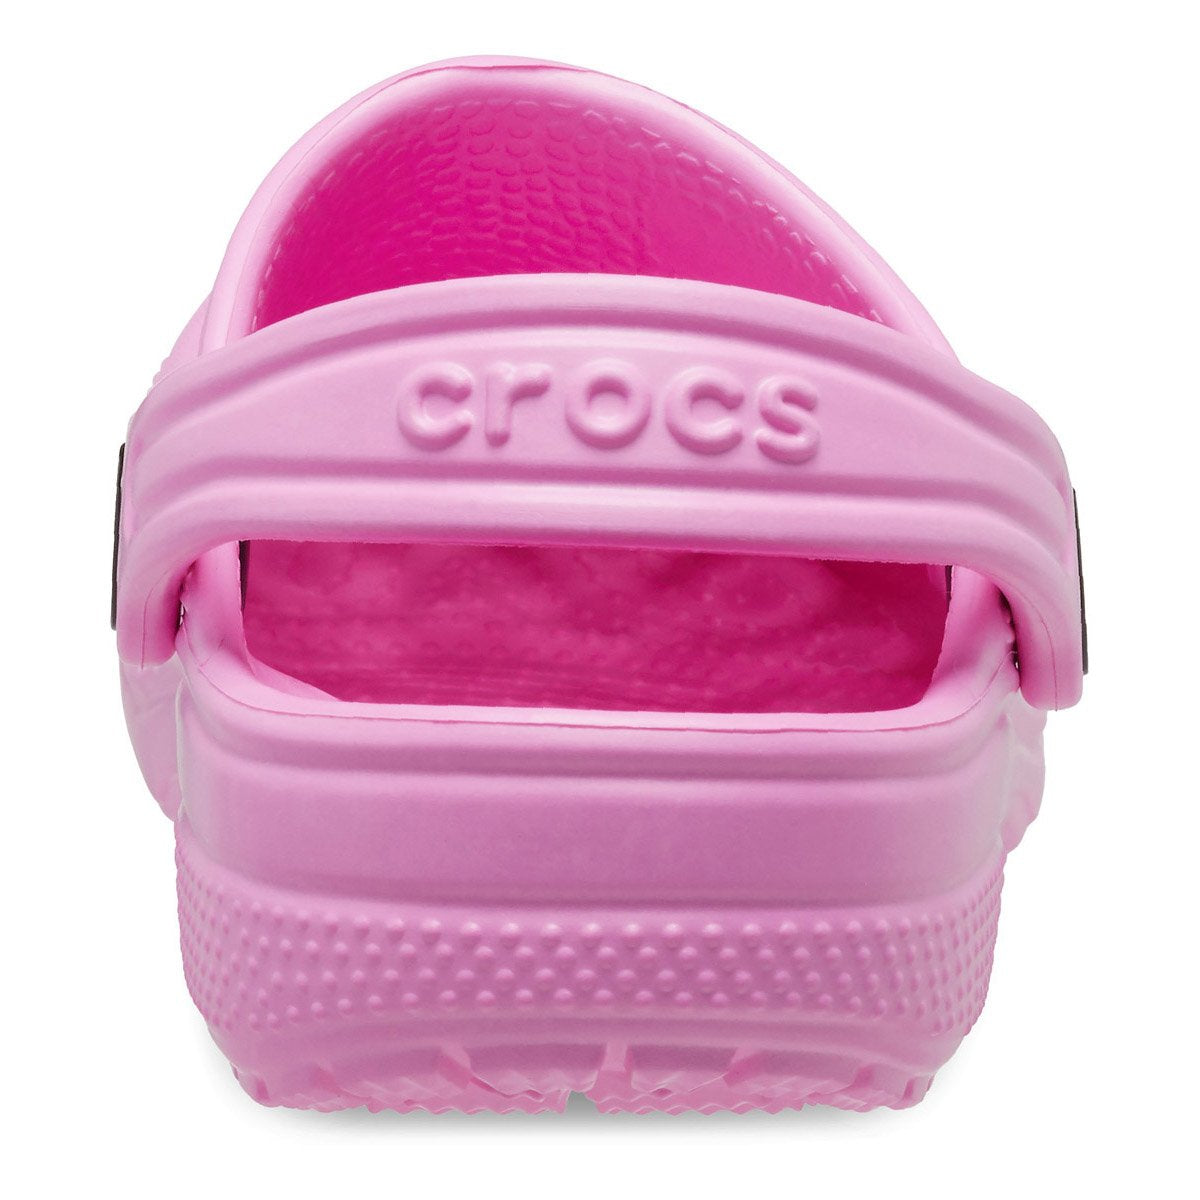 Crocs Toddler Taffy Pink